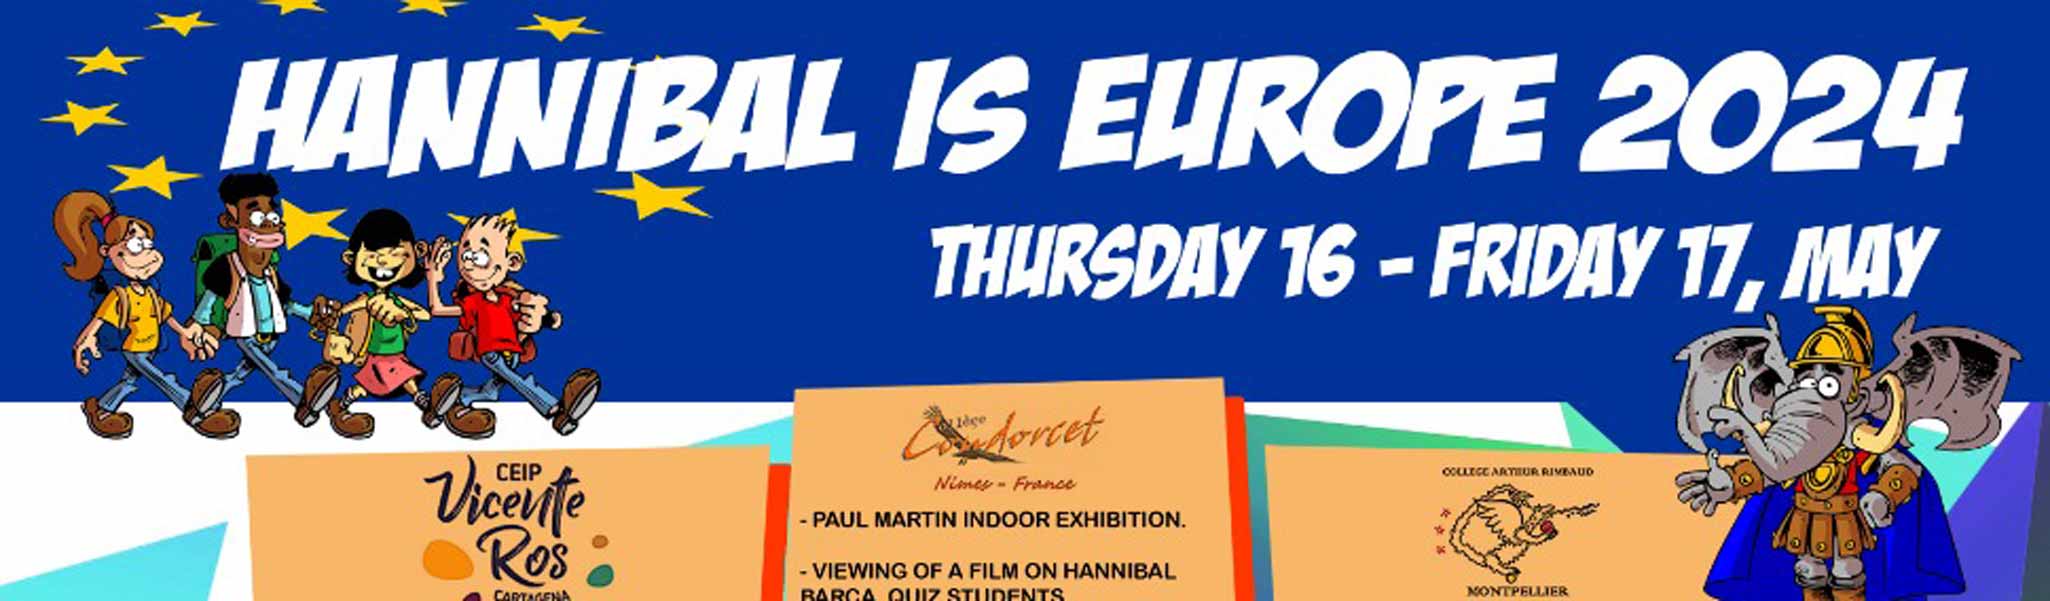 Hannibal is Europe 2024